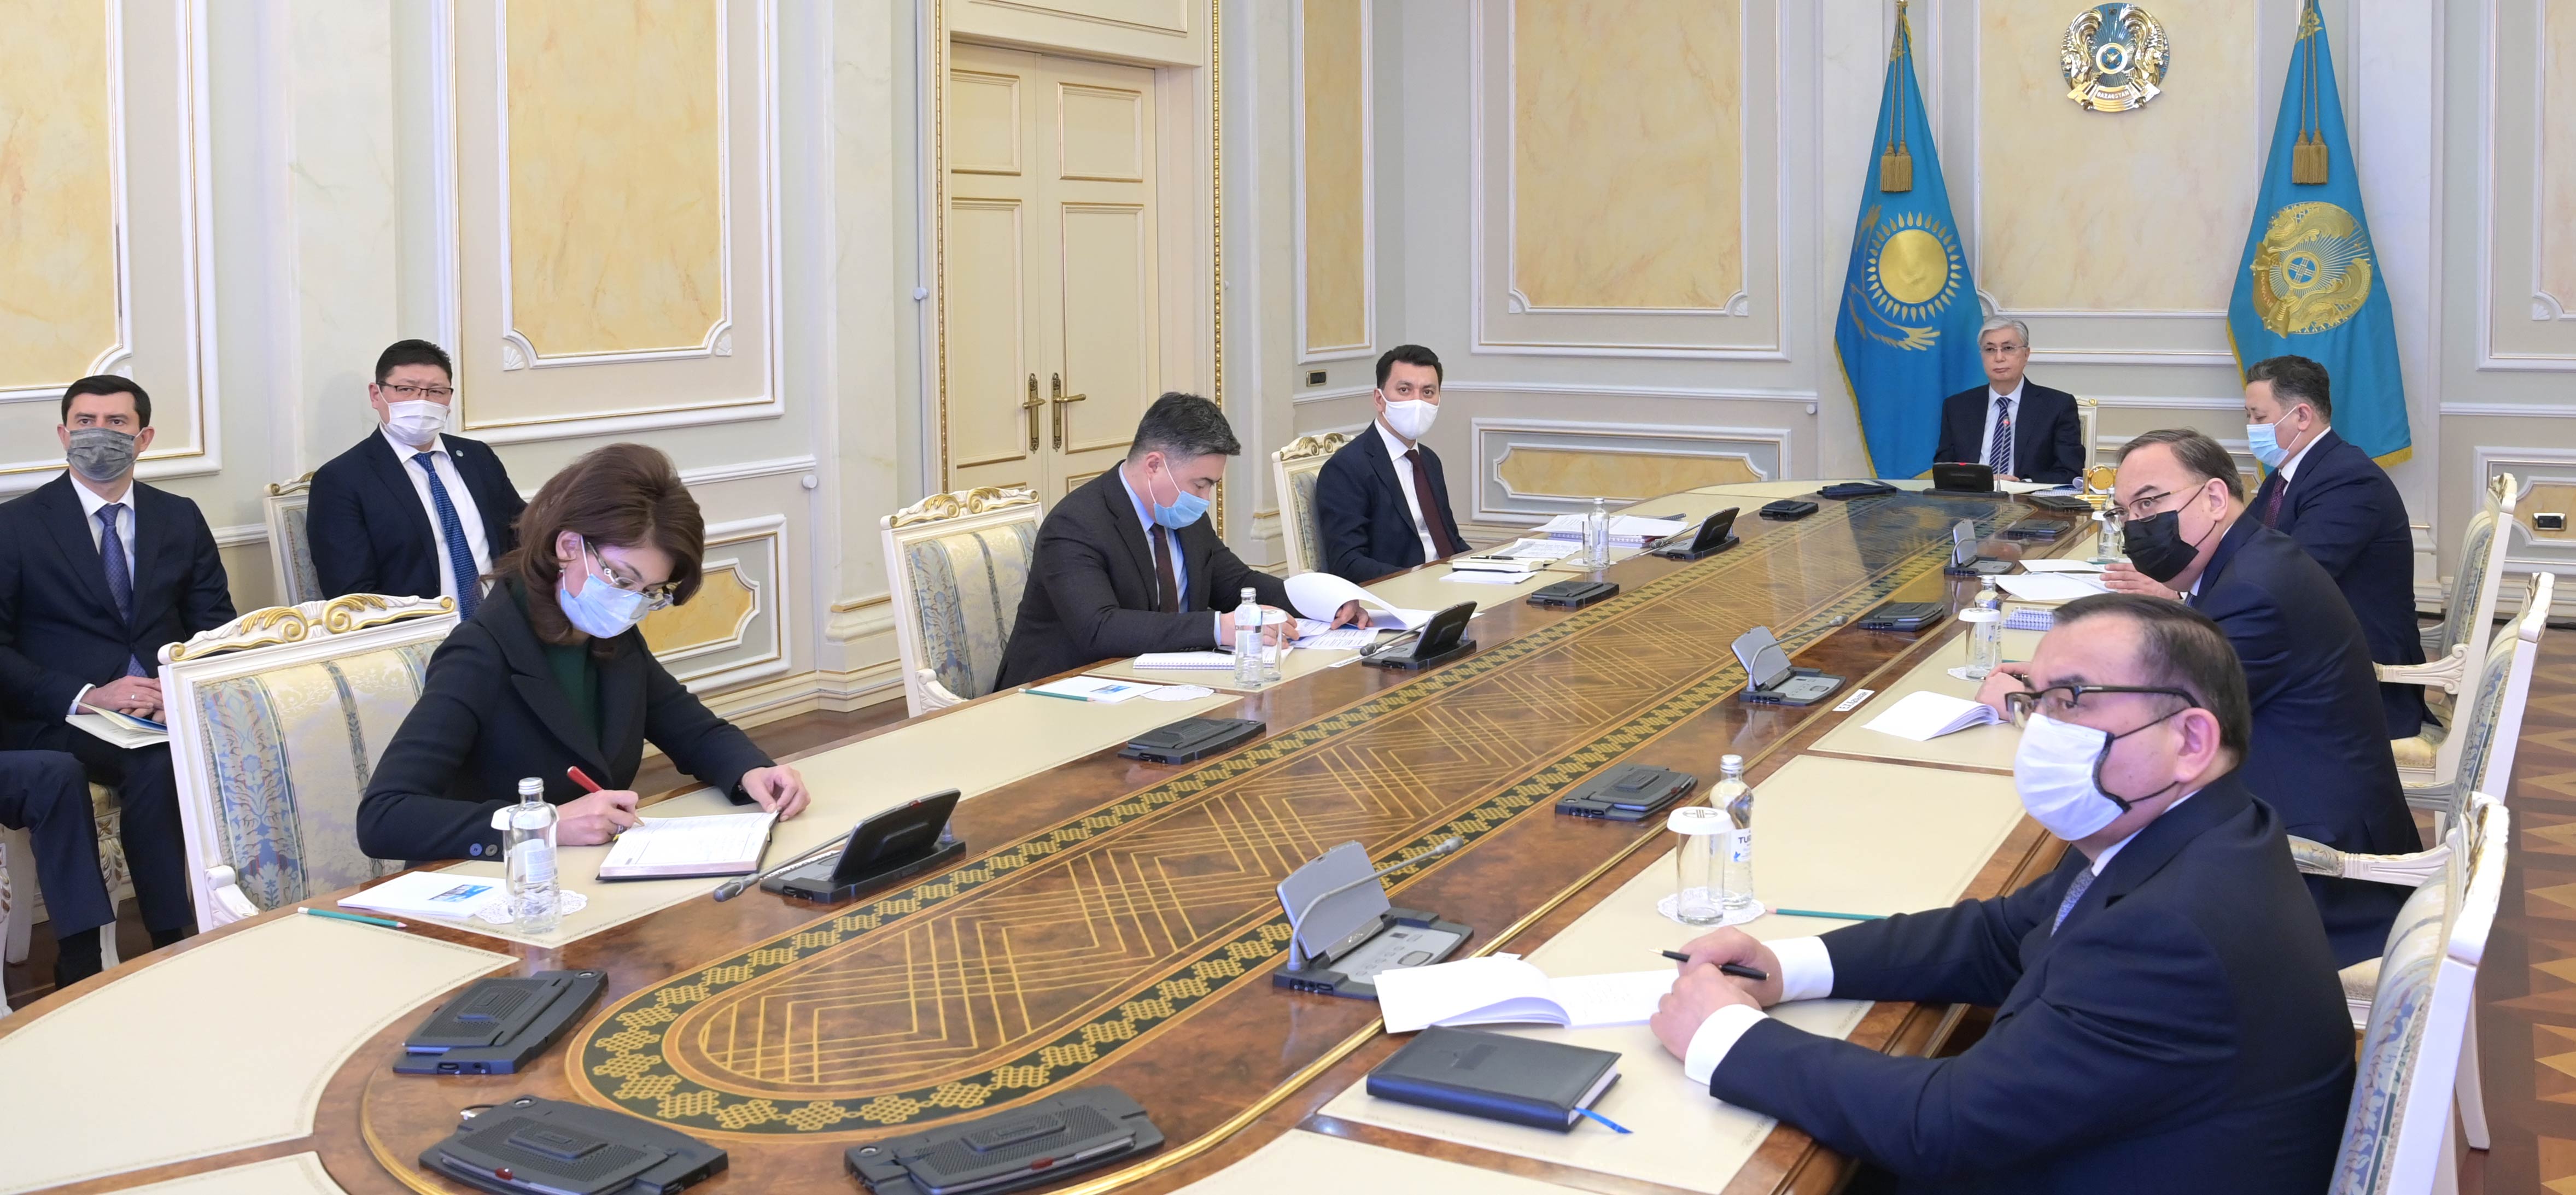 Глава государства провел расширенное заседание Правительства Республики  Казахстан — Официальный сайт Президента Республики Казахстан